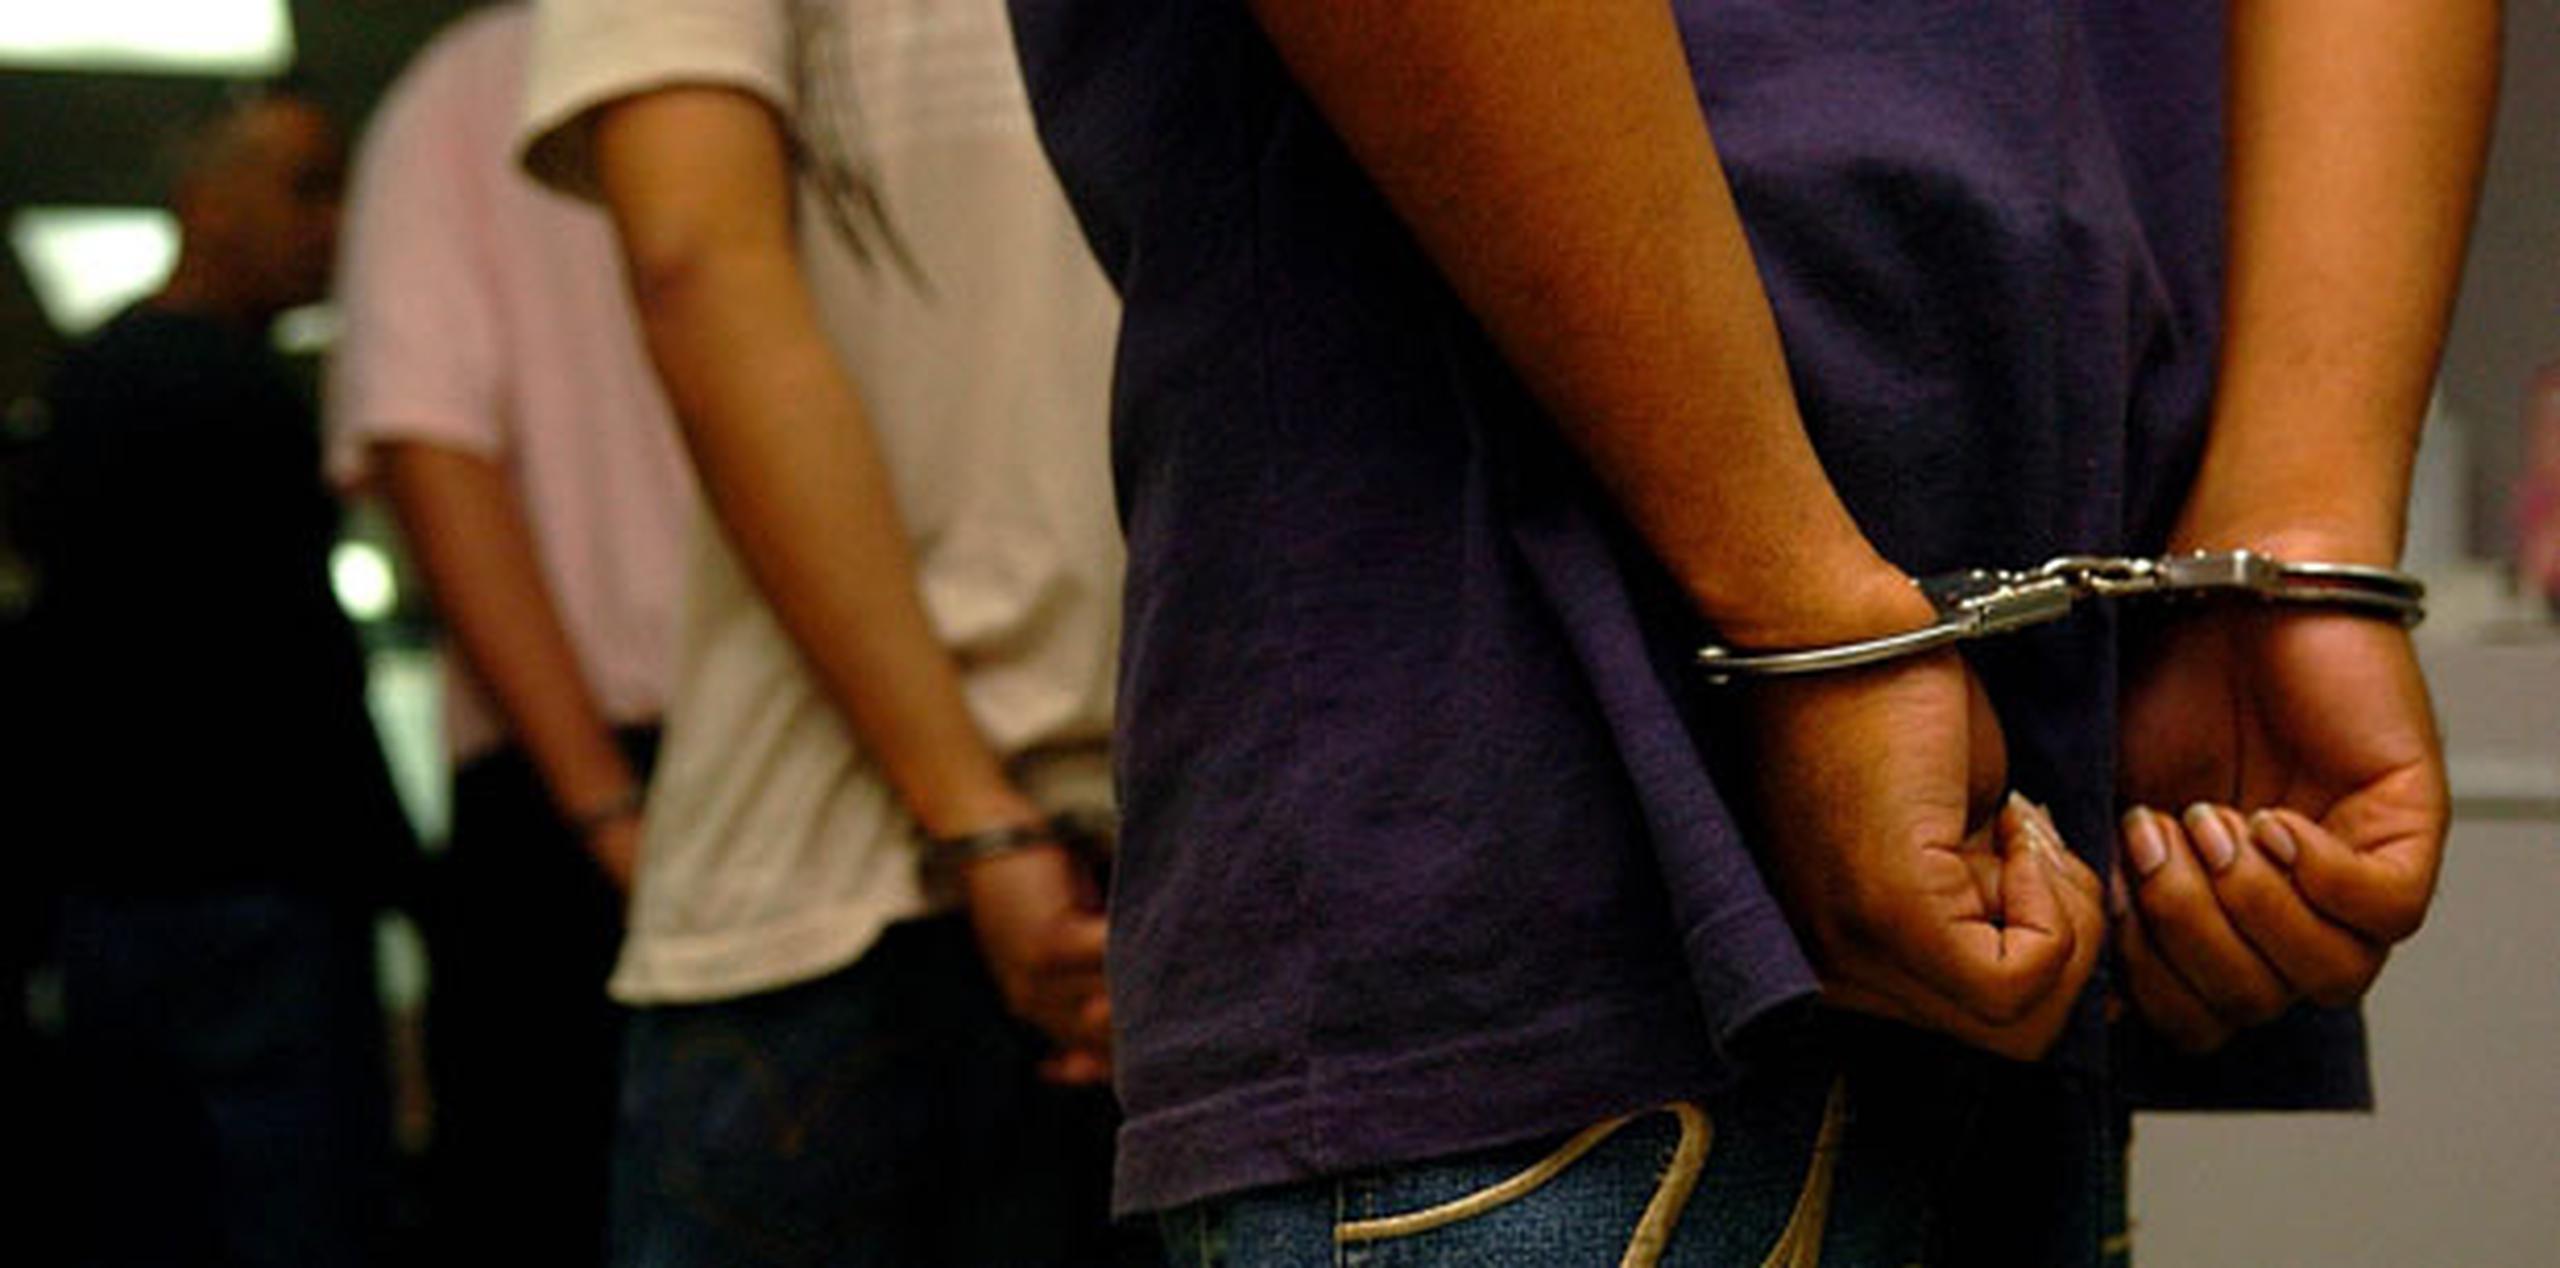 El ladrón, de 37 años y residente en Guaynabo, fue puesto bajo arresto. (Archivo)